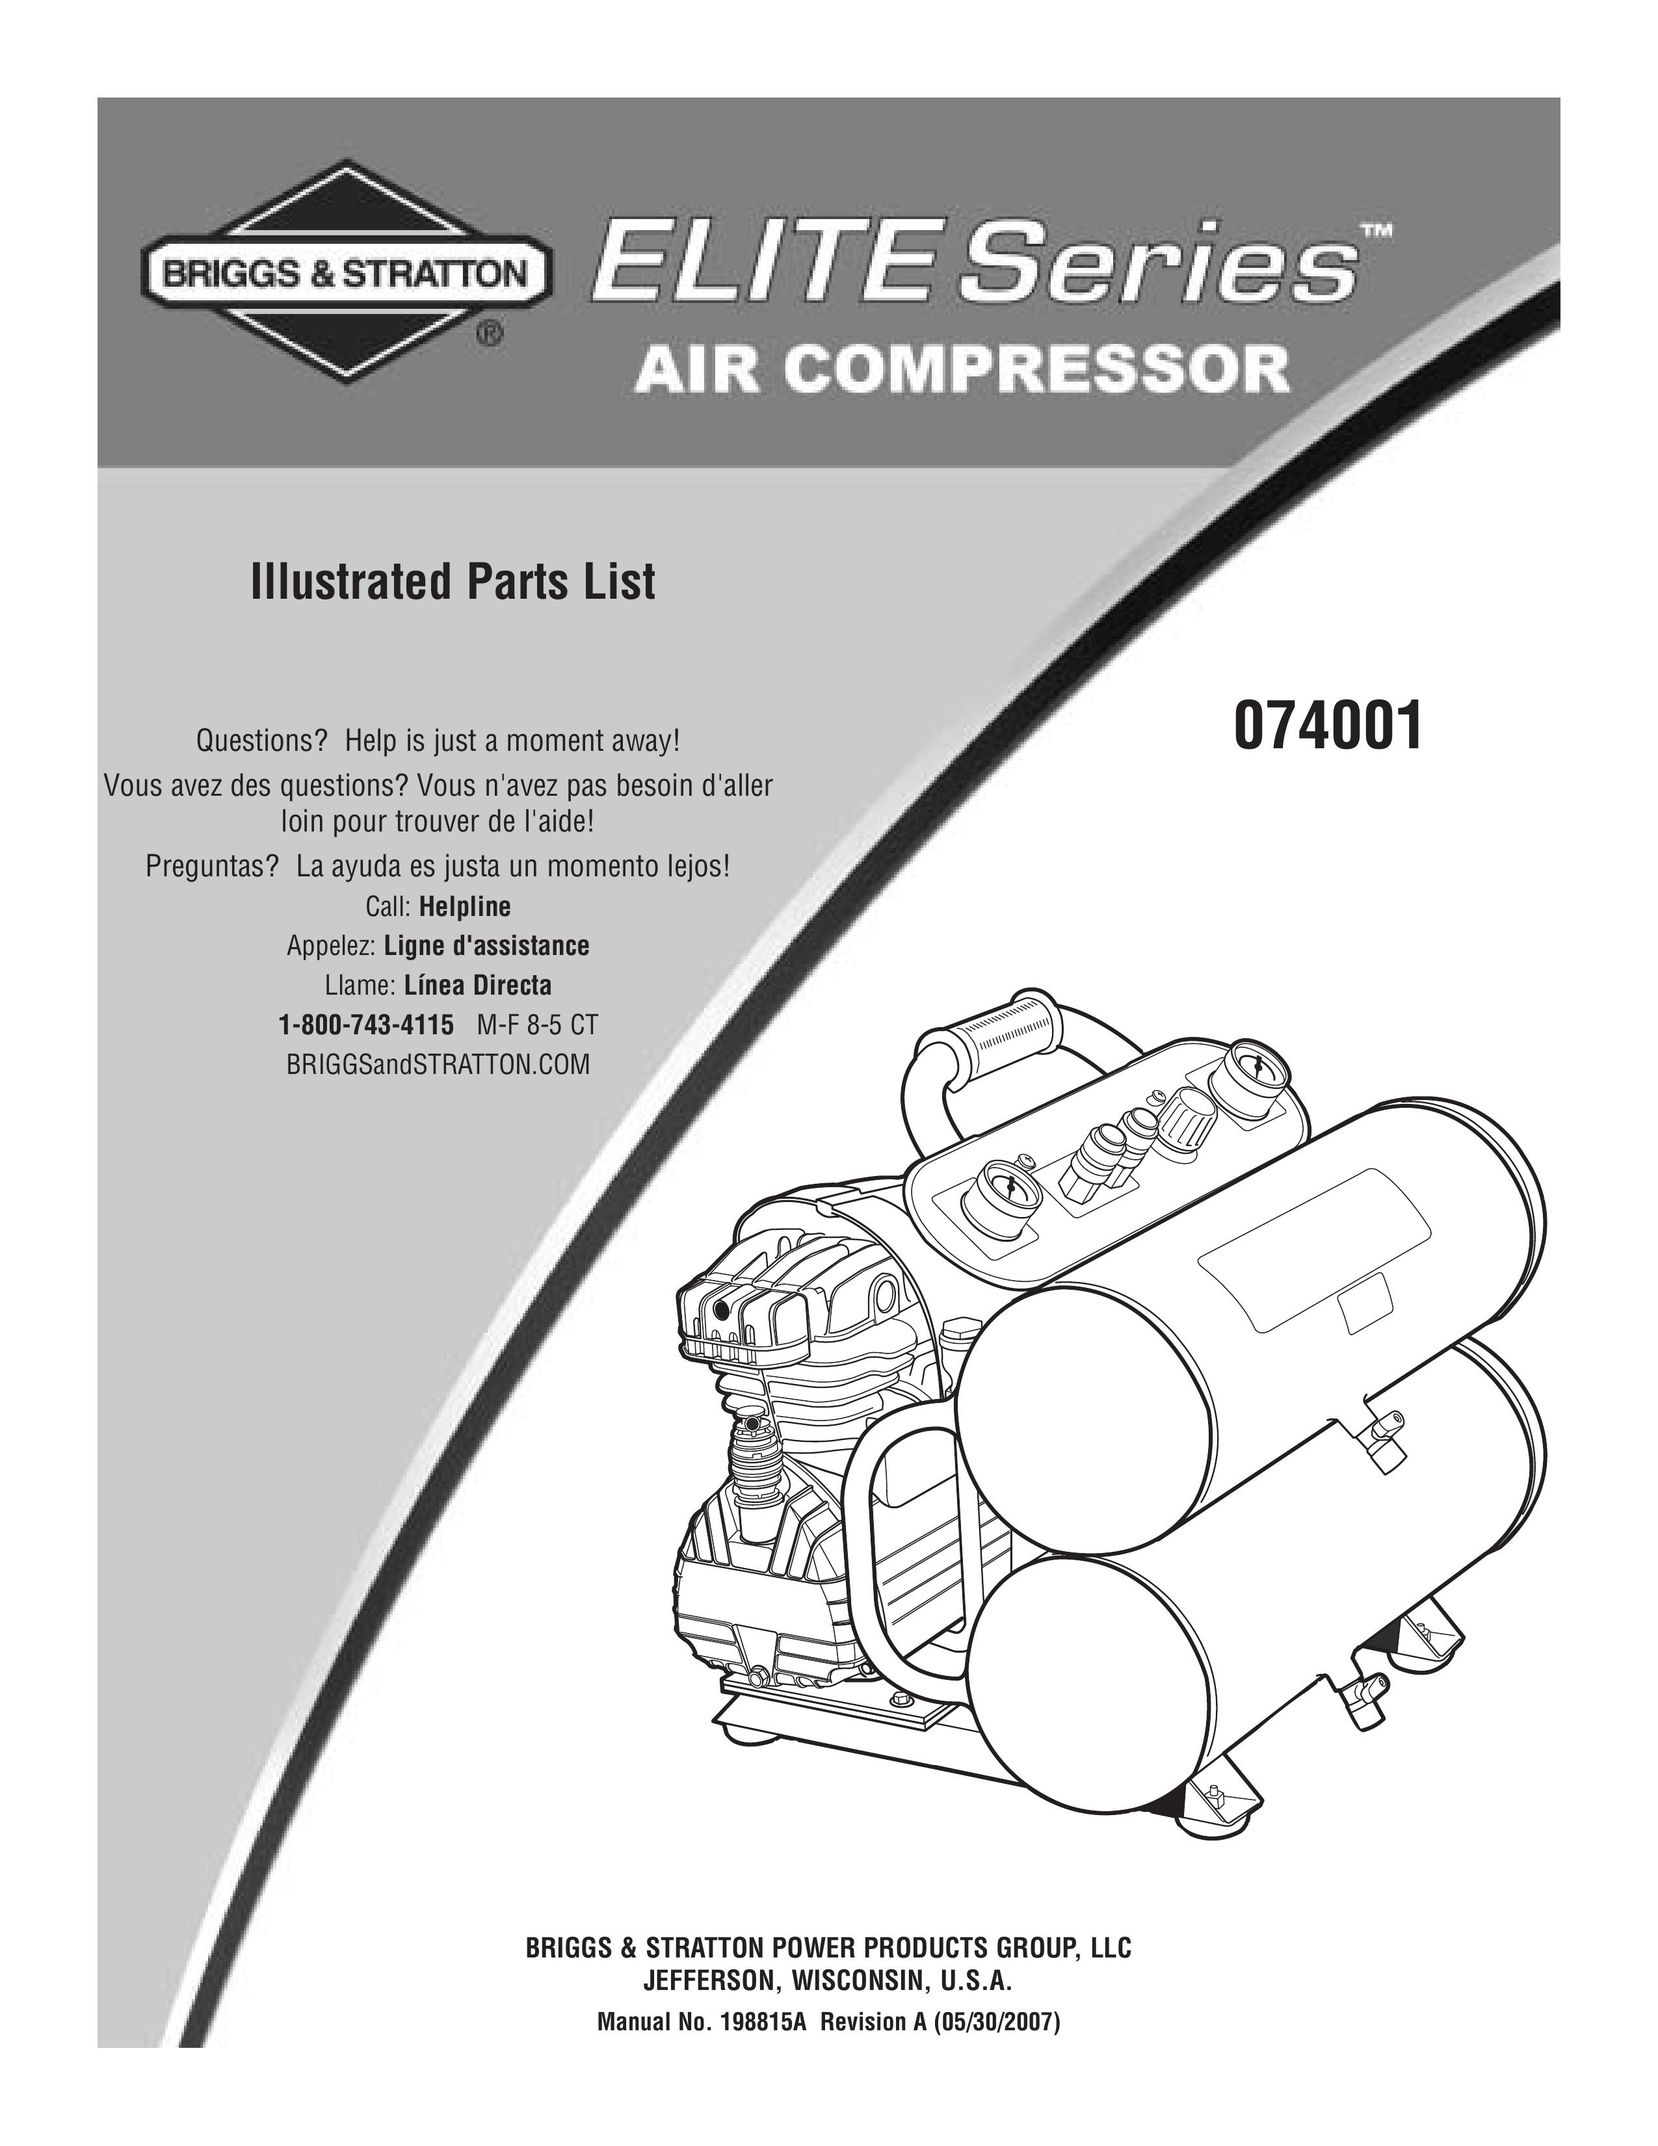 Briggs & Stratton 074001 Air Compressor User Manual